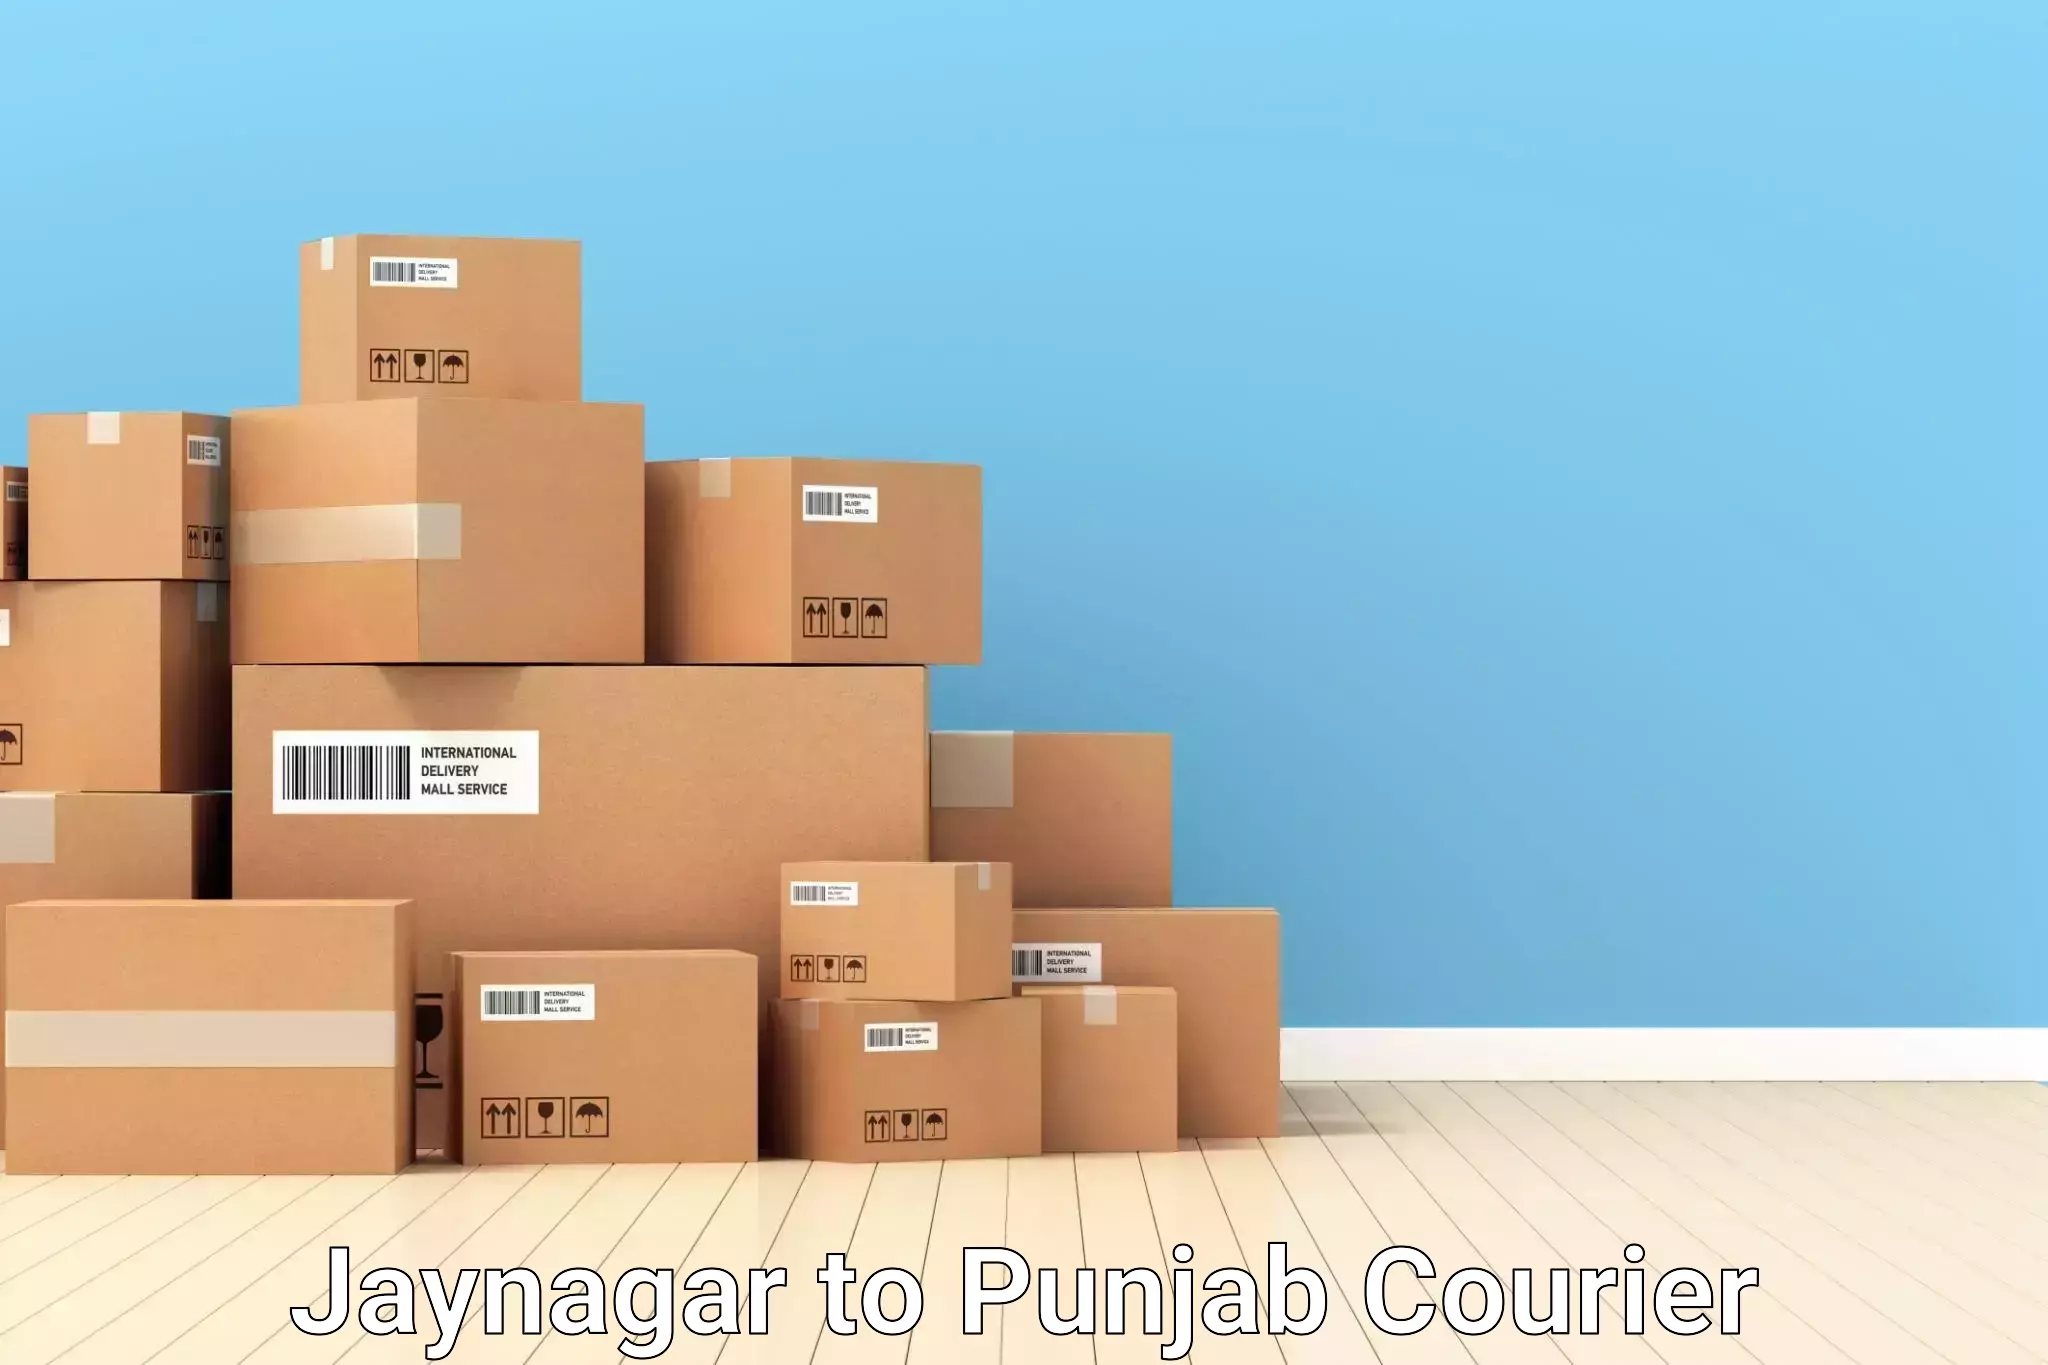 Luggage transport company Jaynagar to Punjab